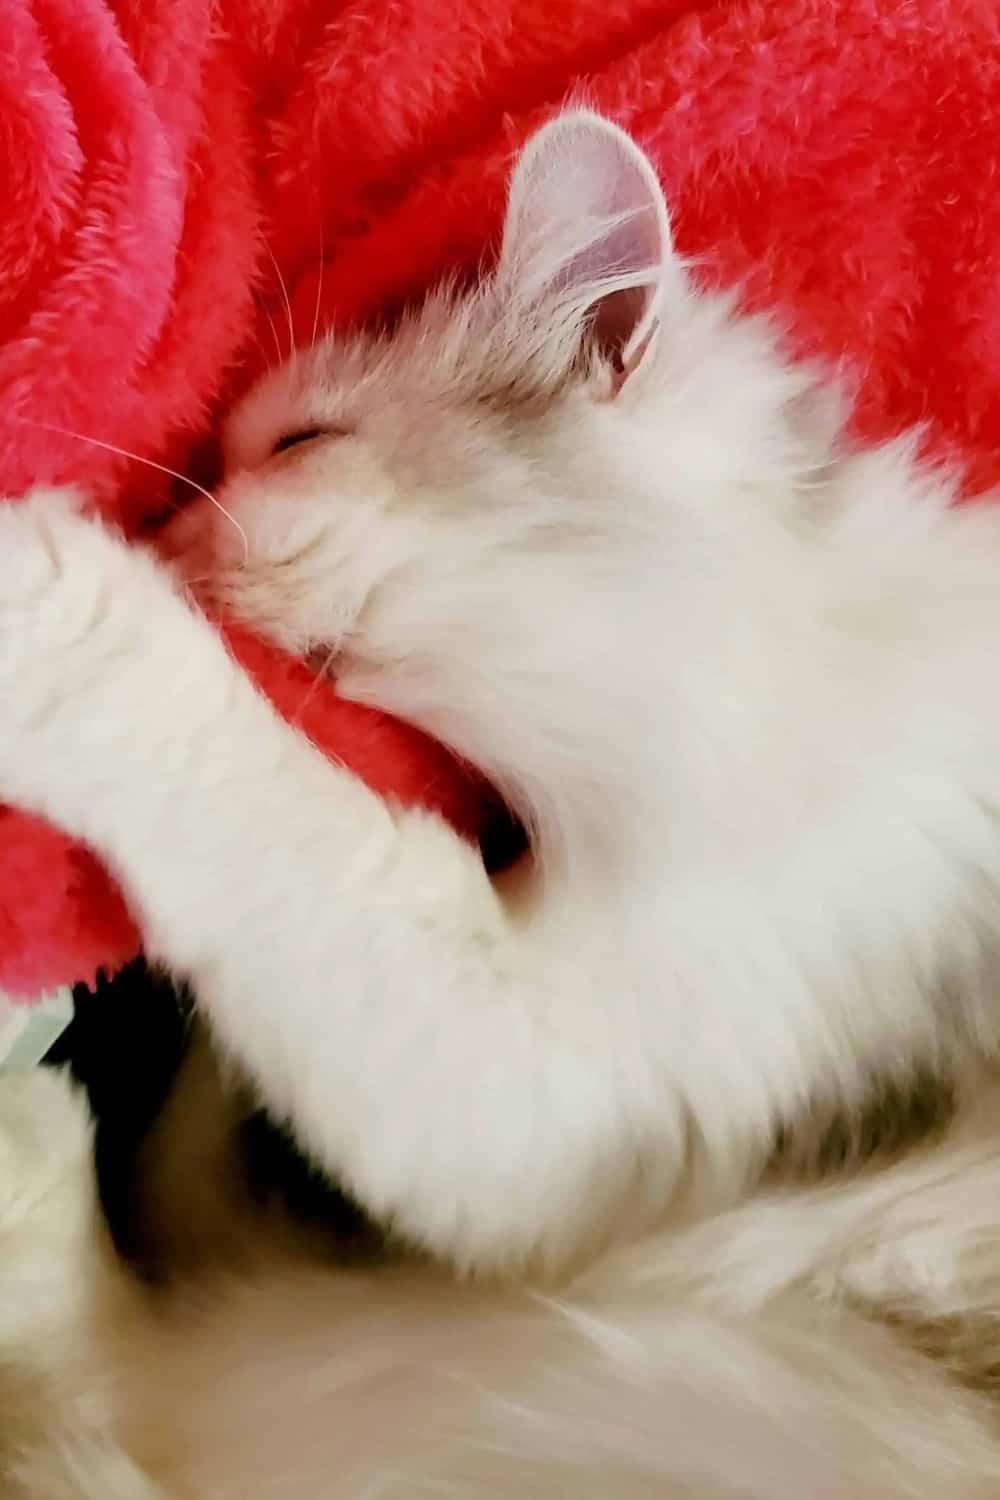 the white kitten licks the red blanket